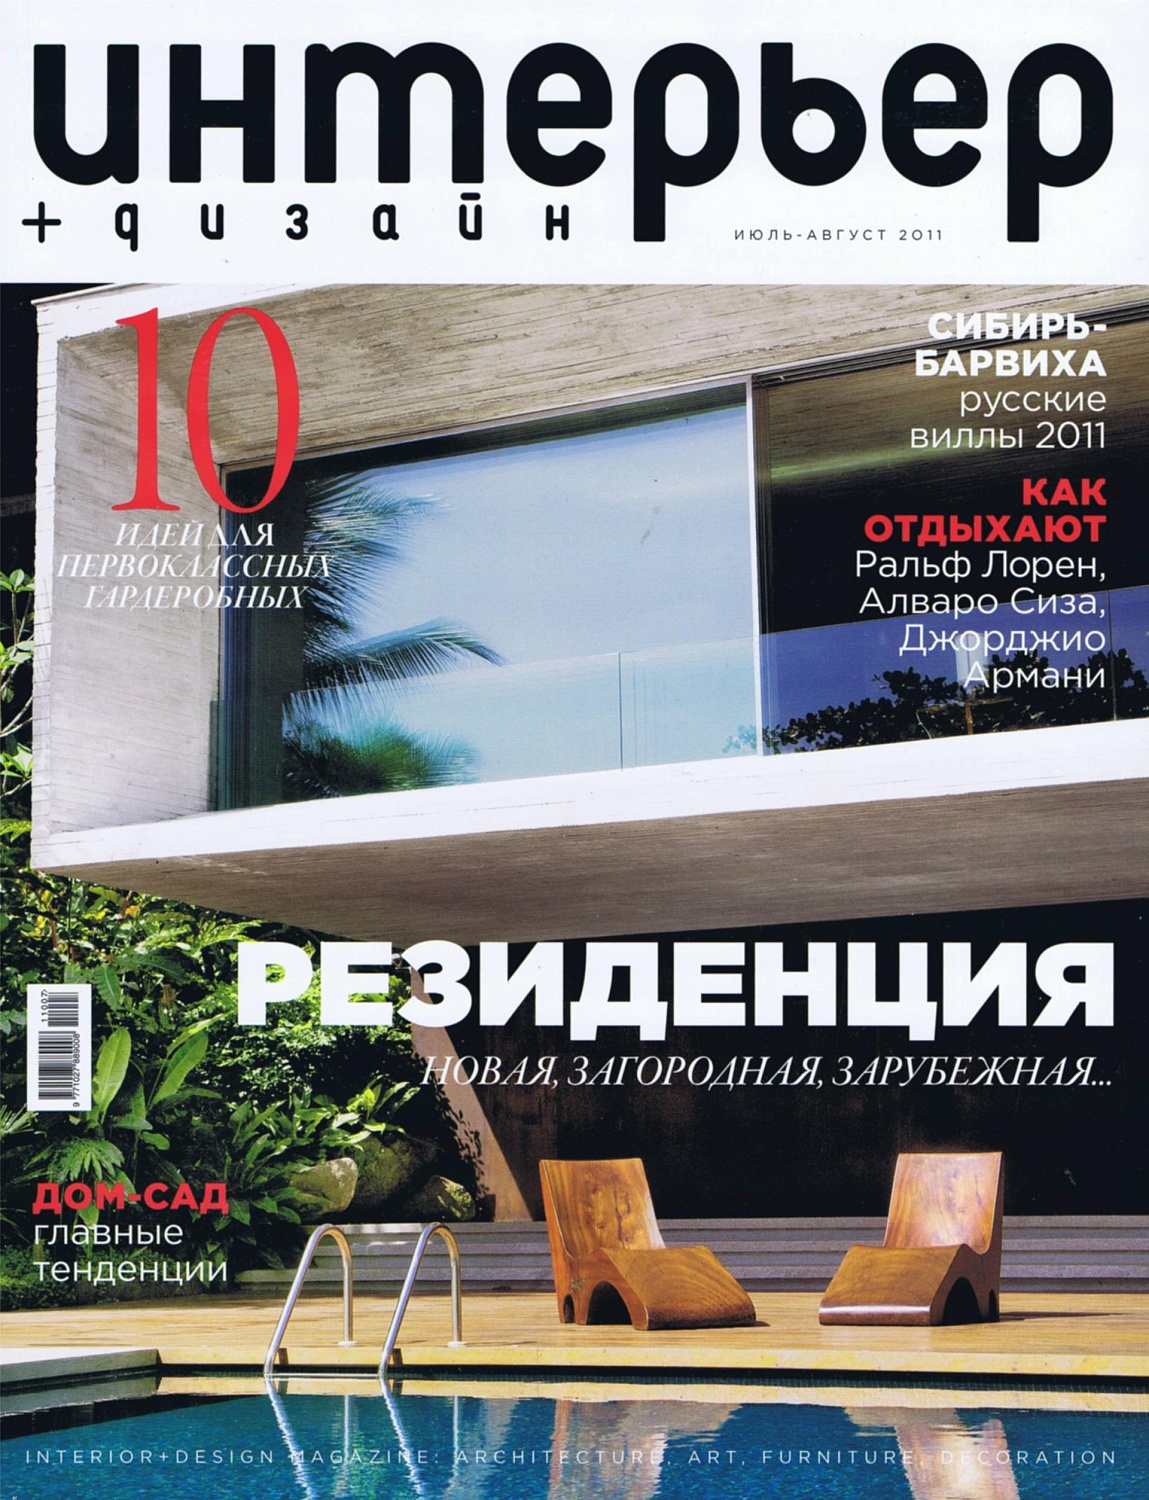 Журнал "ИНТЕРЬЕР+ДИЗАЙН" - "Пинии и валуны" 2011